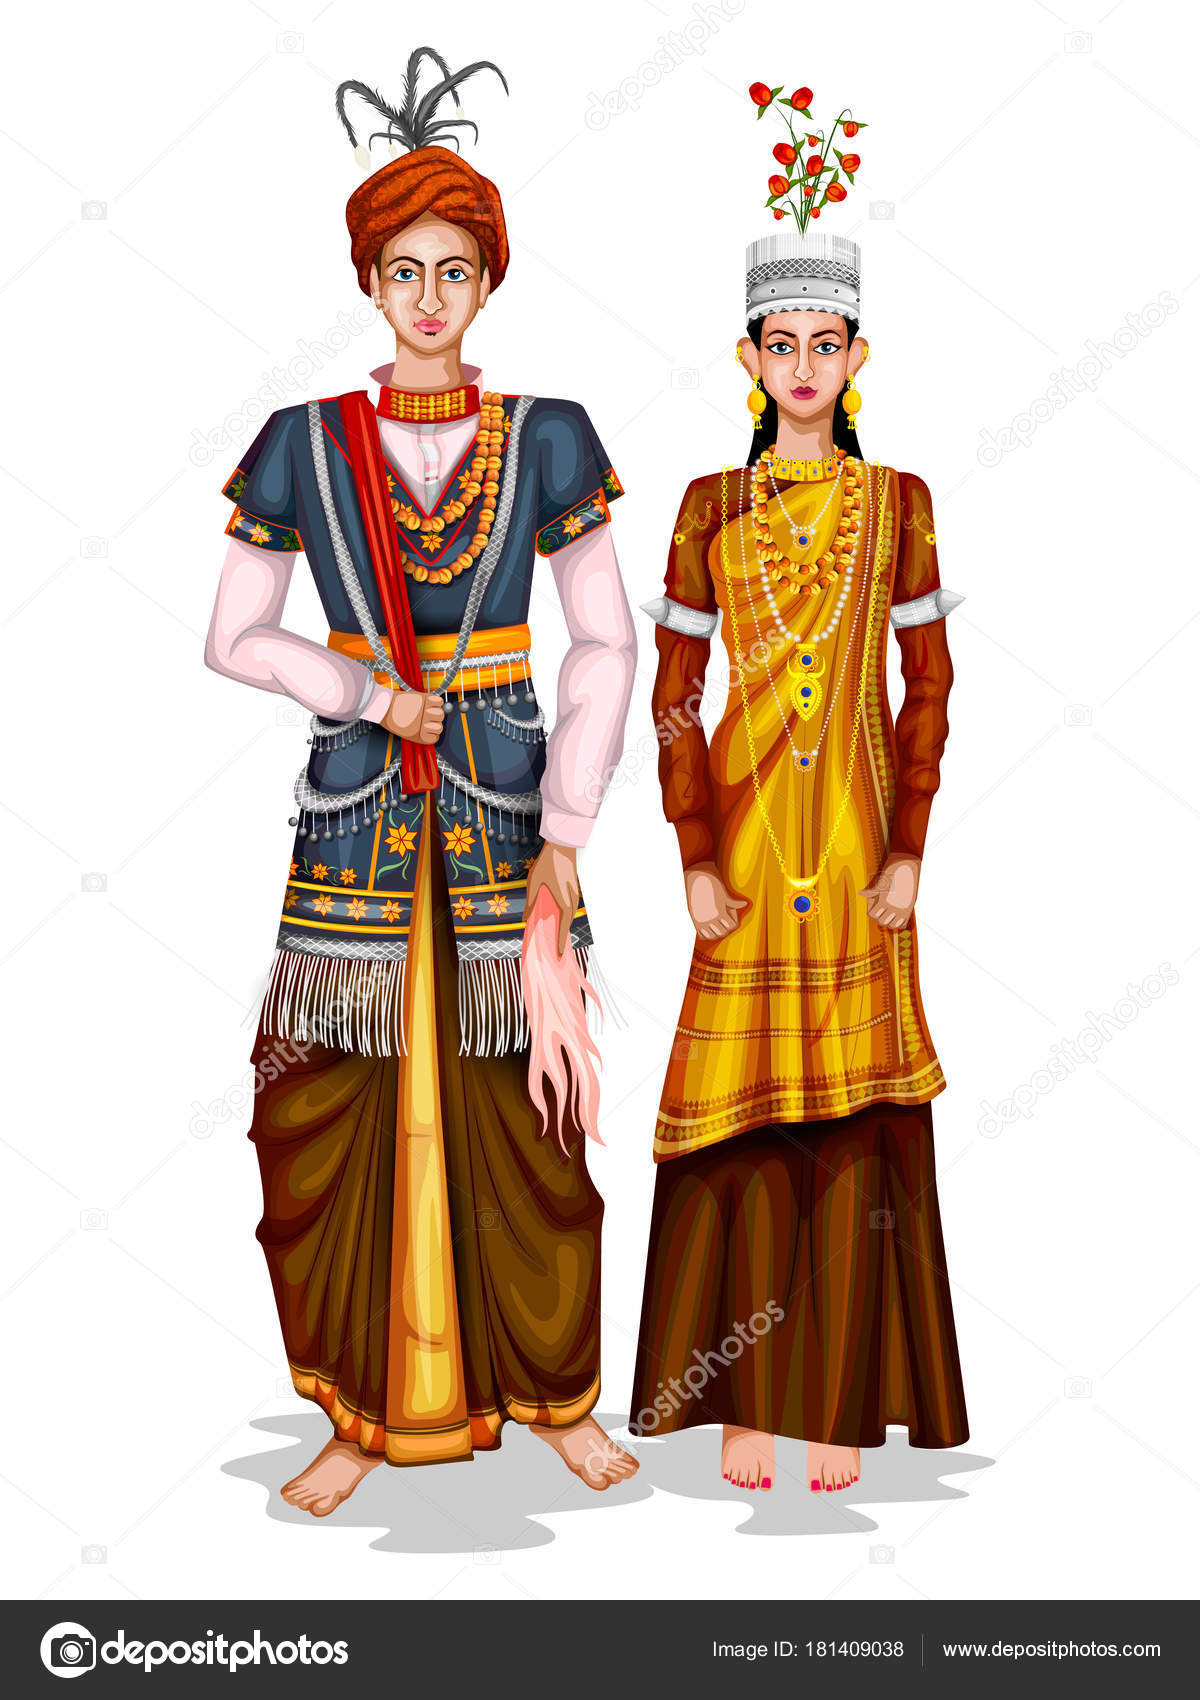 Meghalayan wedding couple in traditional costume of Meghalaya, India ...